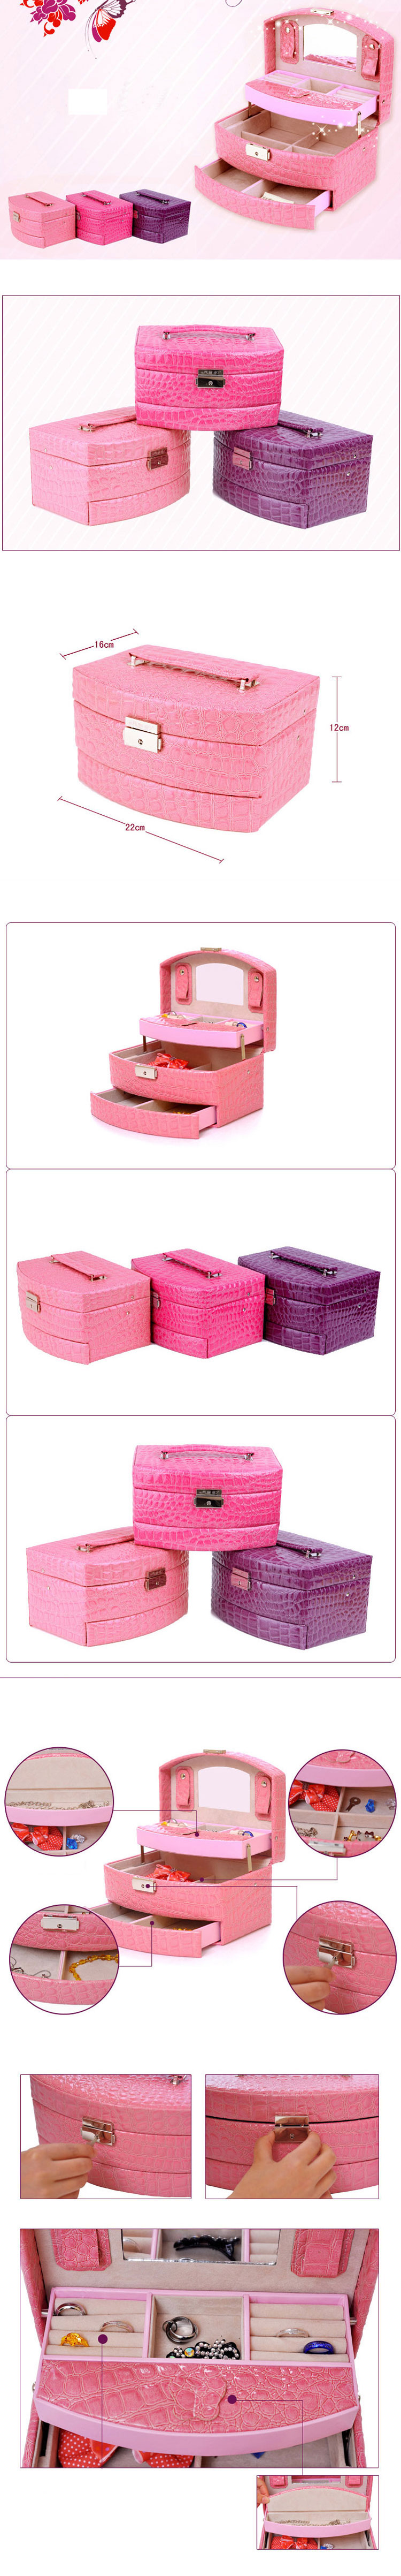 开馨宝欧式经典三层首饰盒/饰品收纳盒-玫红色 。